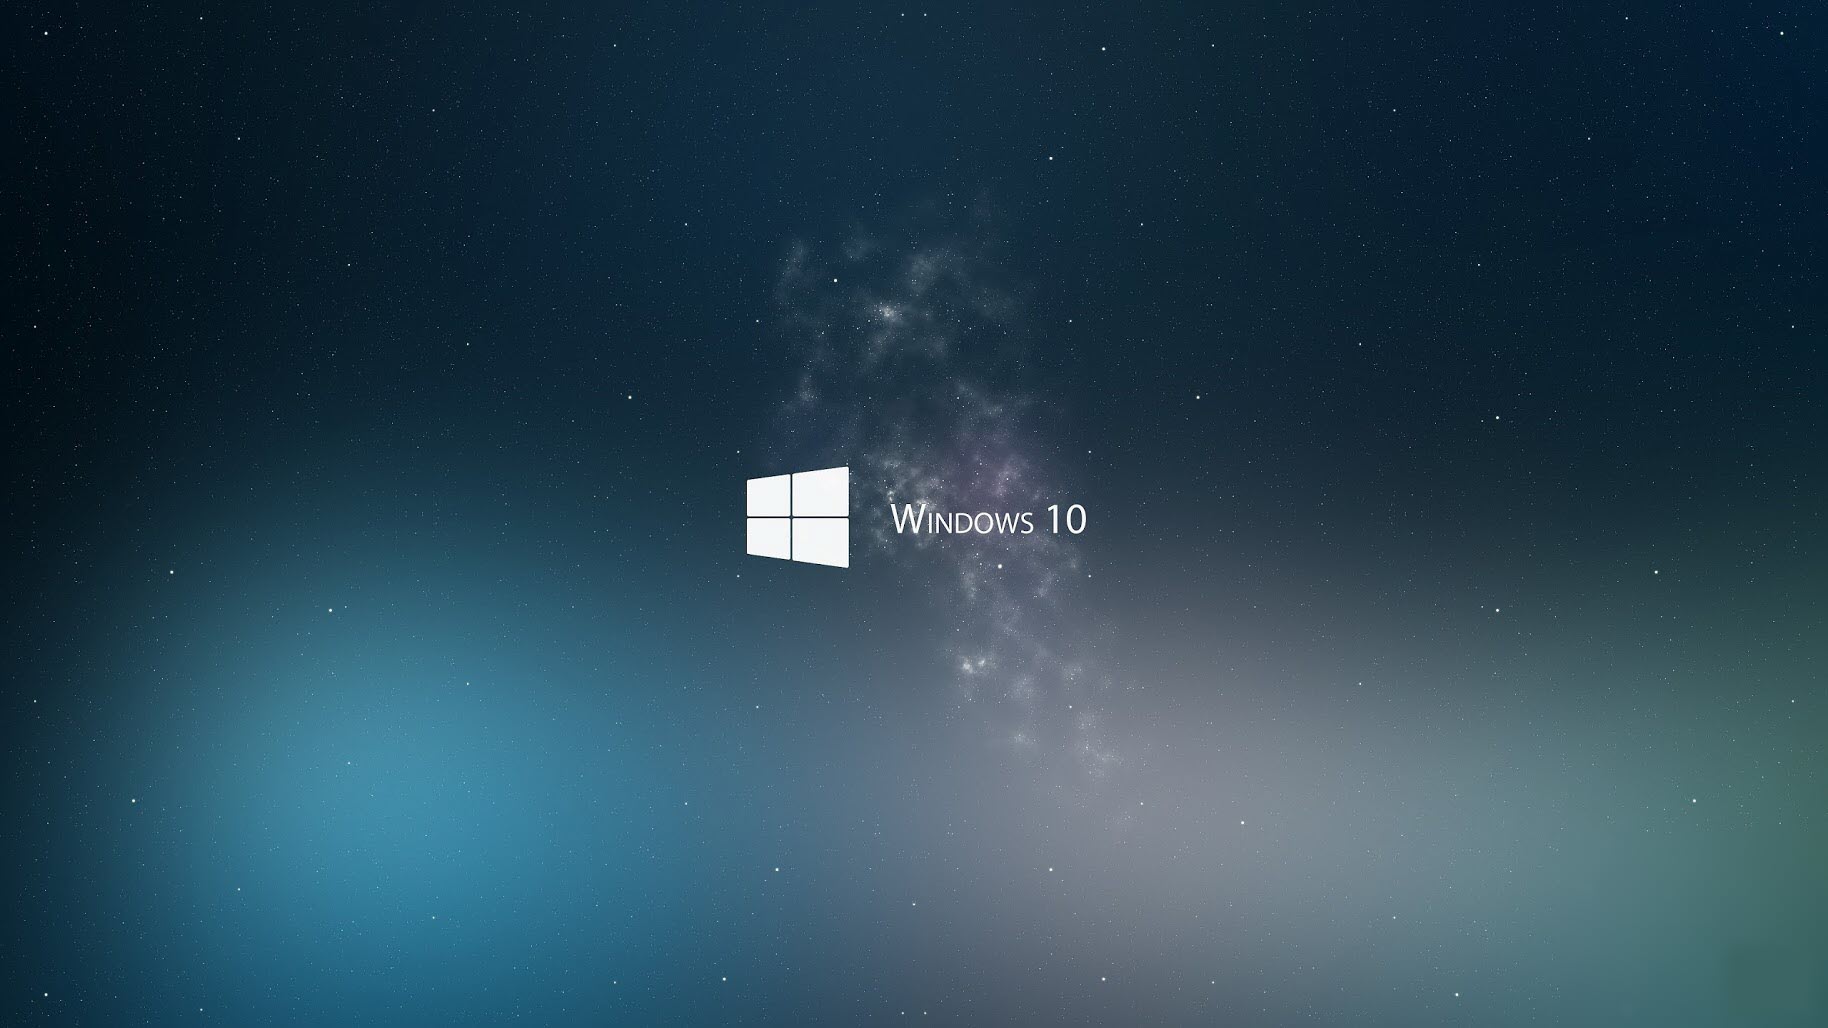 Cách lấy hình nền mặc định trên Windows 10 đơn giản - Fptshop.com.vn